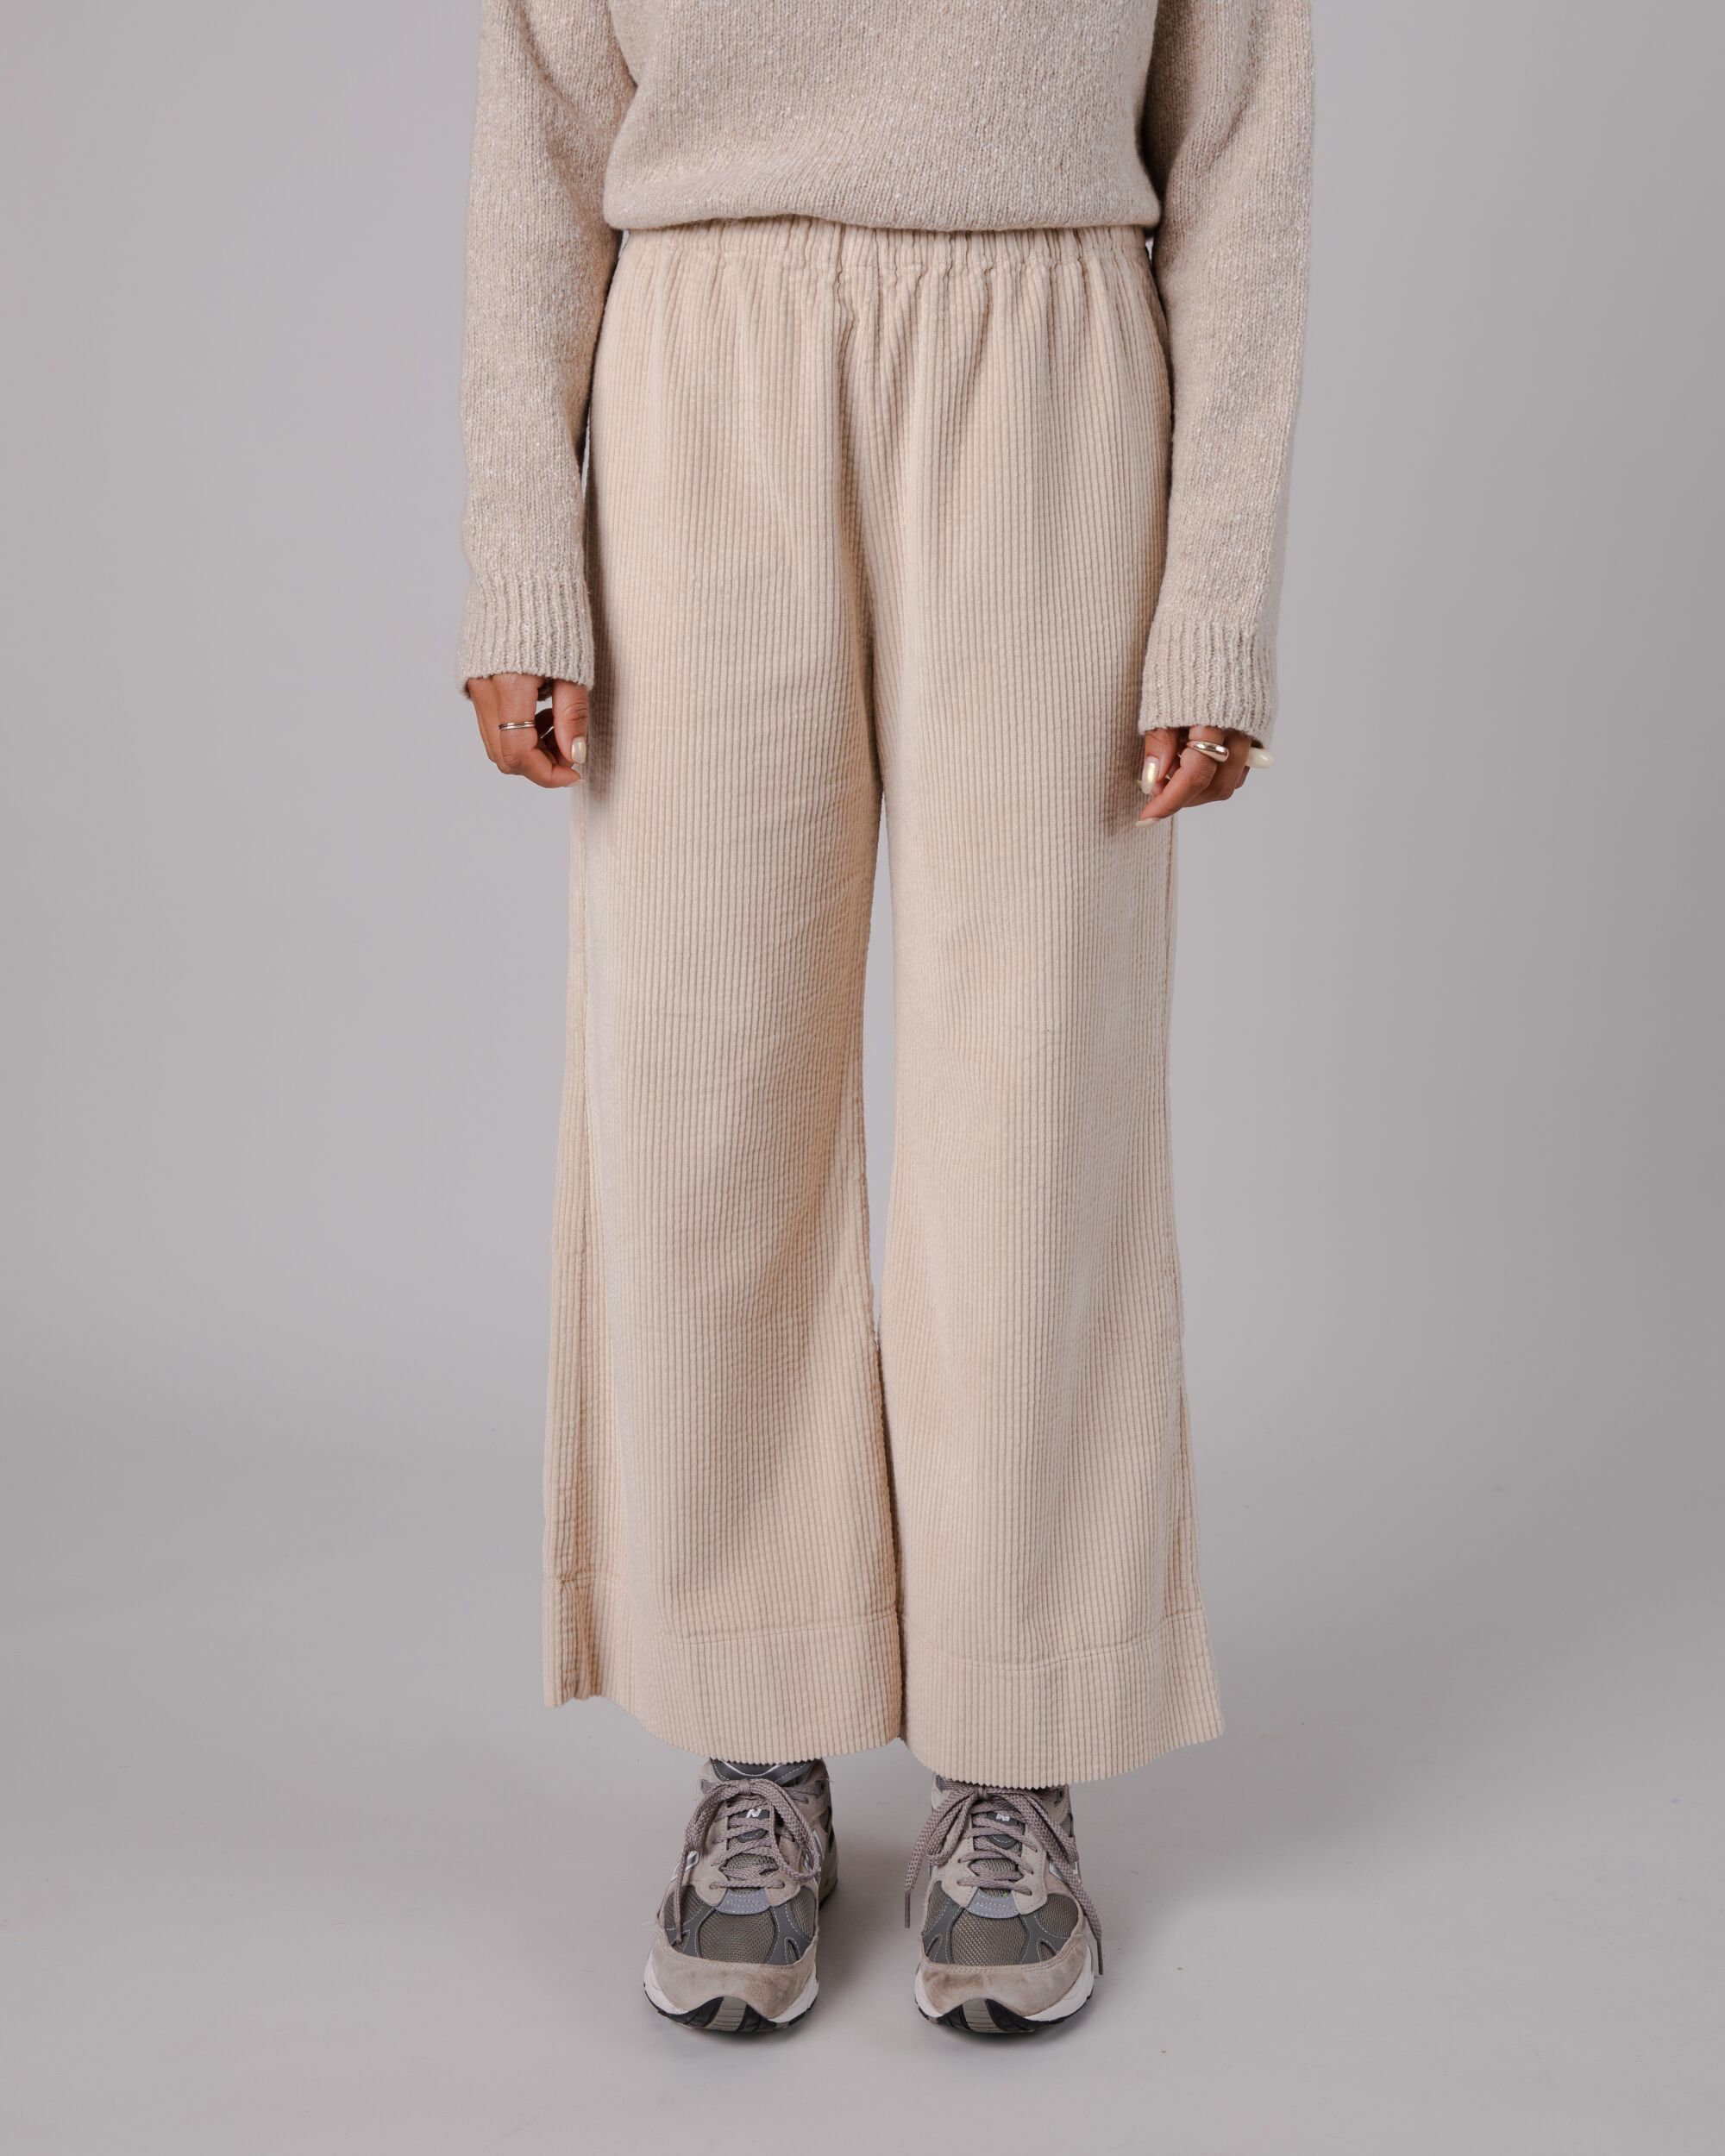 Pantalon large en velours côtelé beige en coton biologique de Brava Fabrics